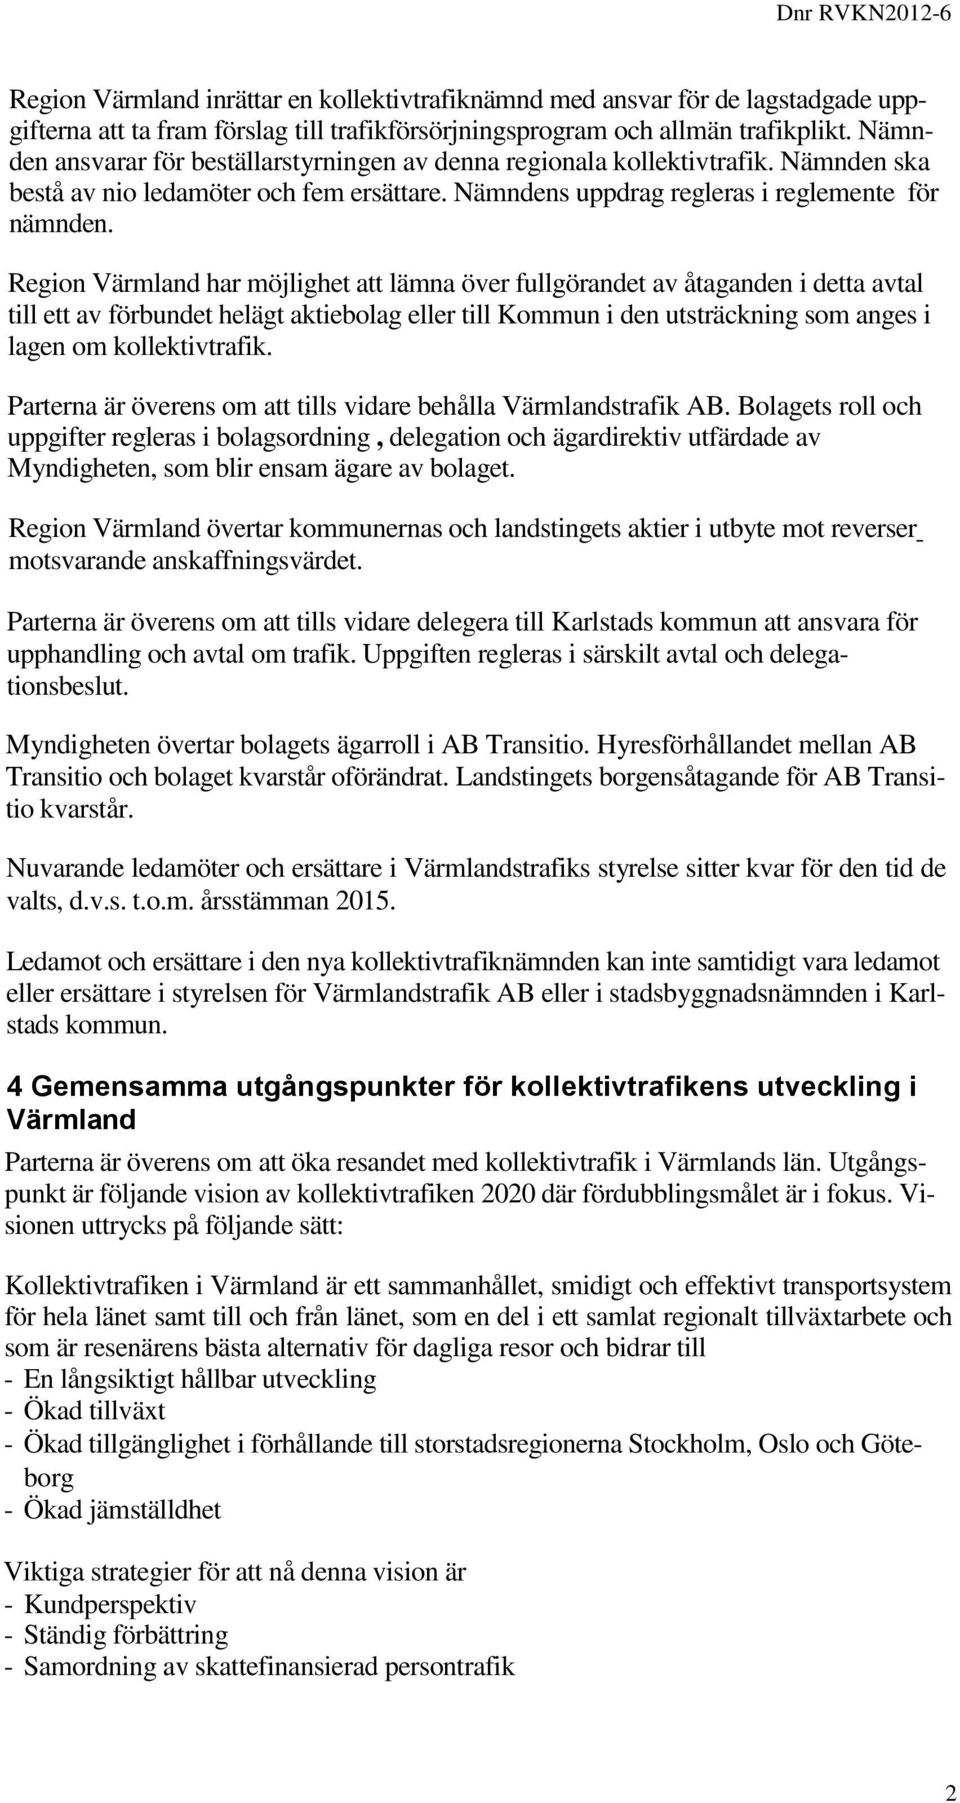 Region Värmland har möjlighet att lämna över fullgörandet av åtaganden i detta avtal till ett av förbundet helägt aktiebolag eller till Kommun i den utsträckning som anges i lagen om kollektivtrafik.